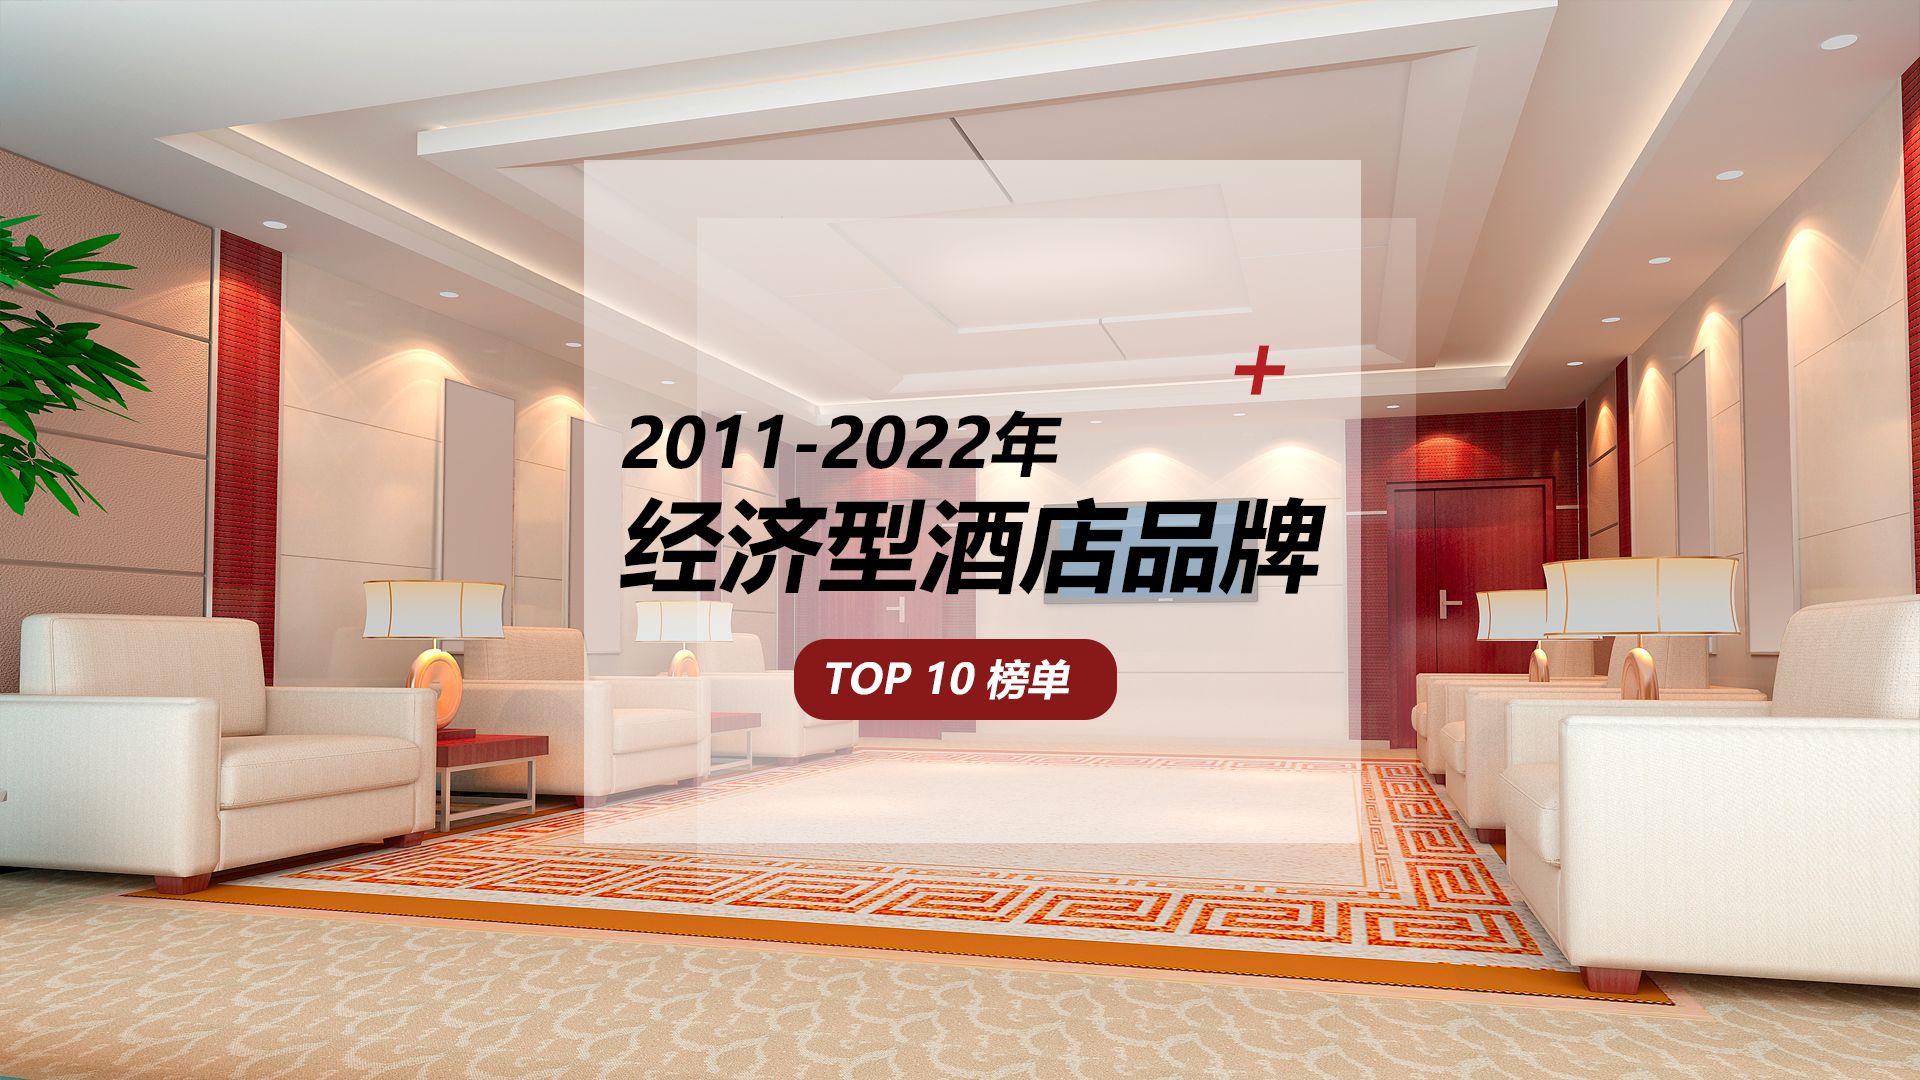 2011-2022年经济型酒店品牌10强榜单发布